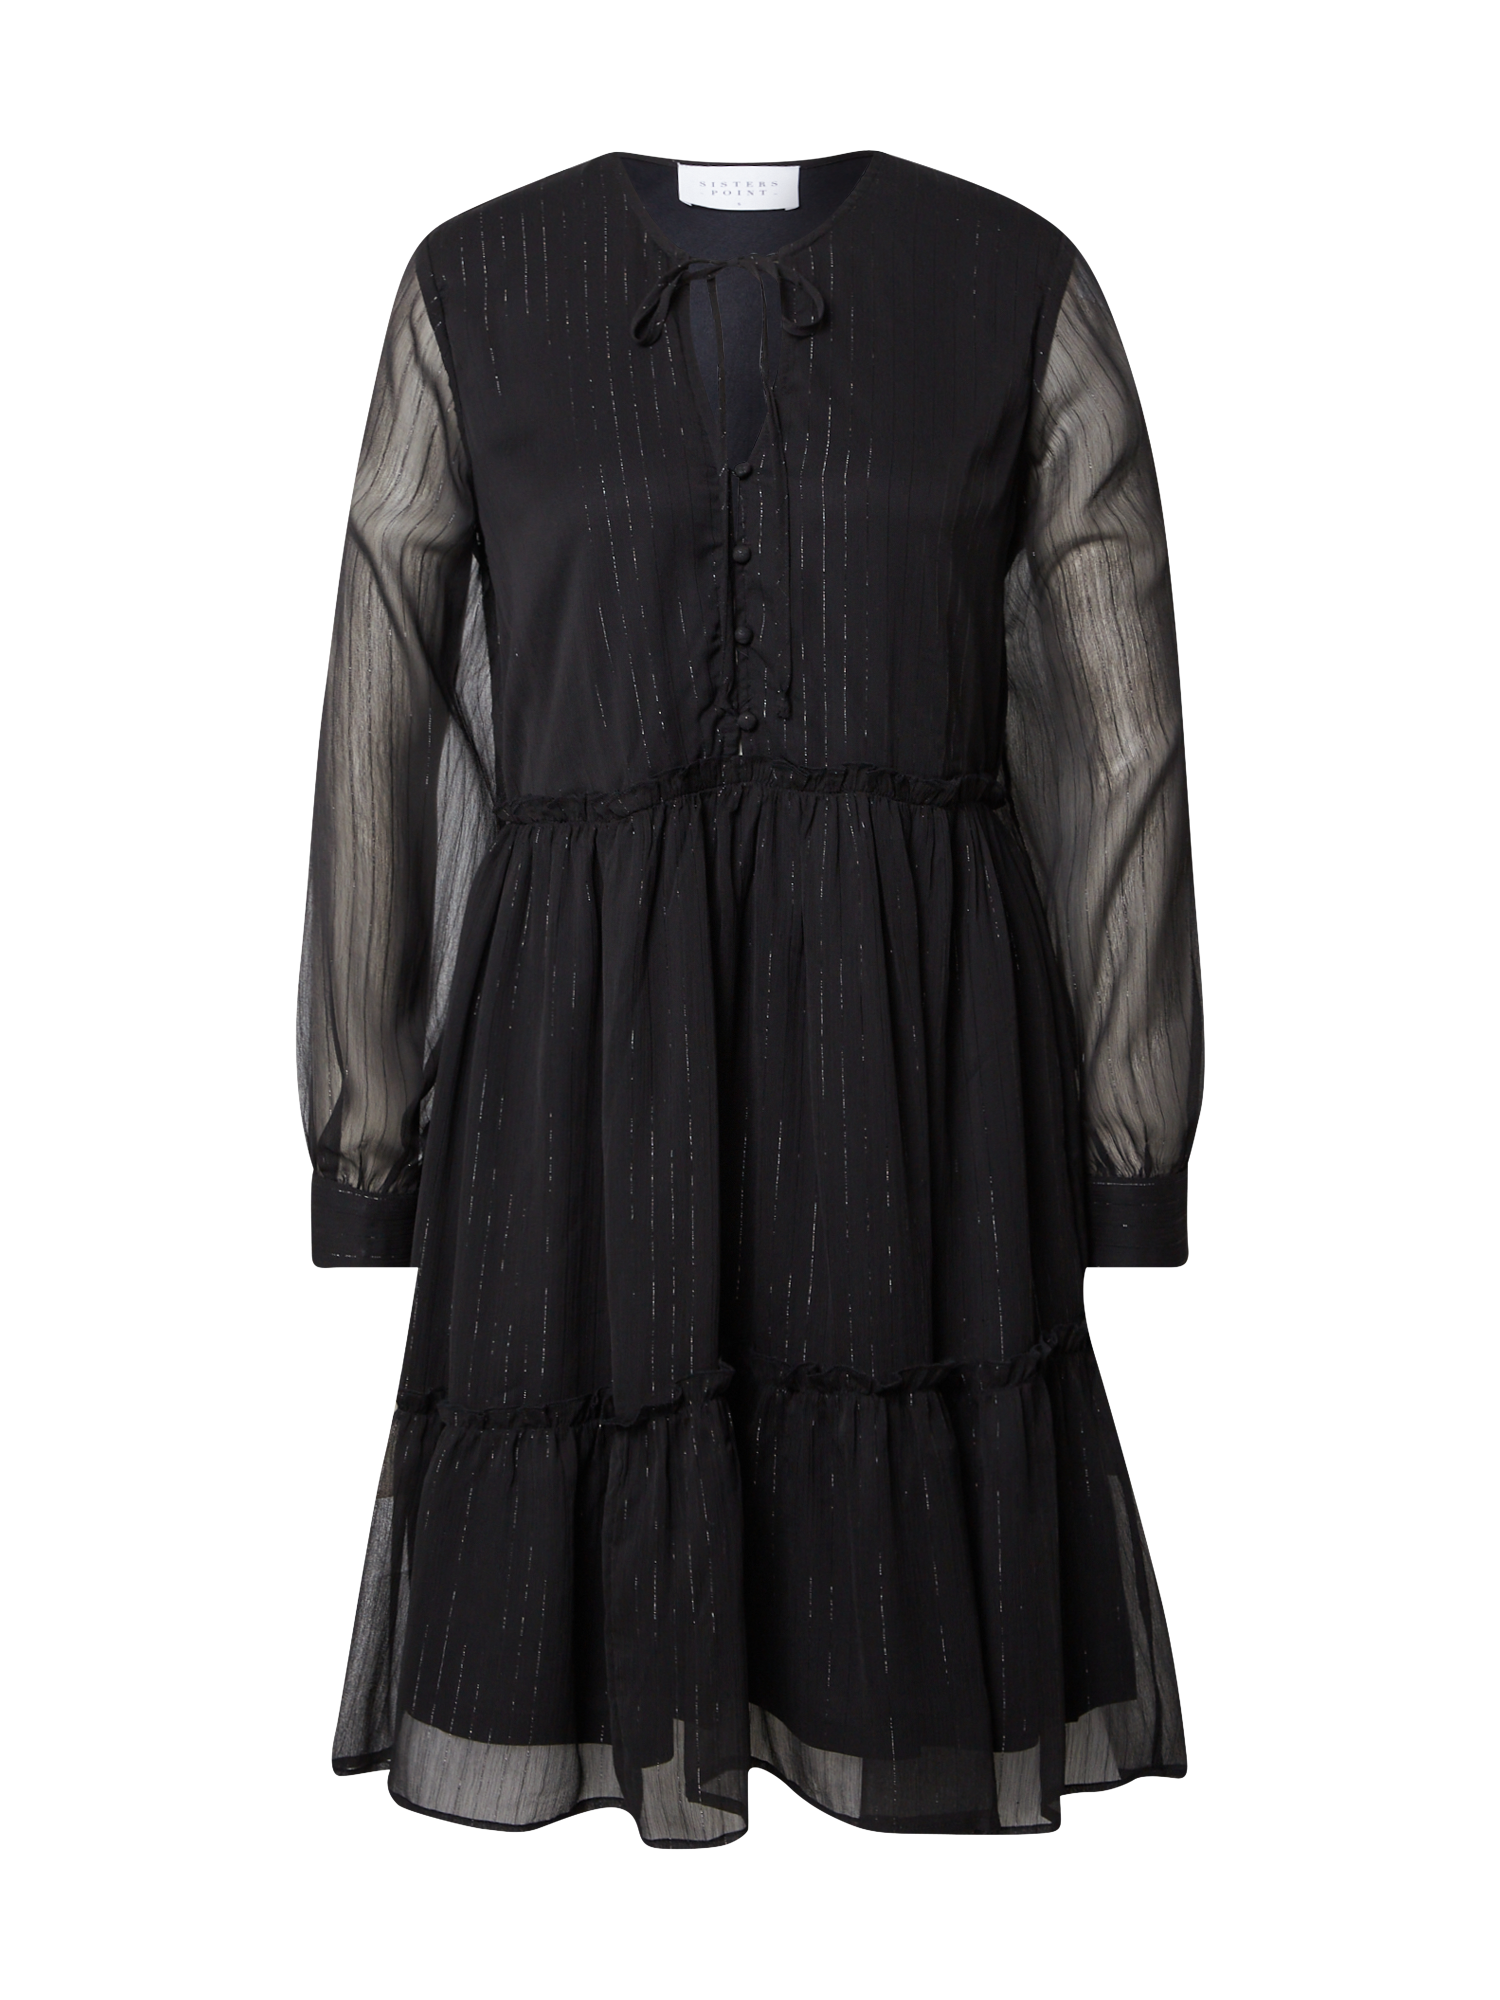 Odzież Kobiety SISTERS POINT Sukienka koszulowa ULIA w kolorze Czarnym 